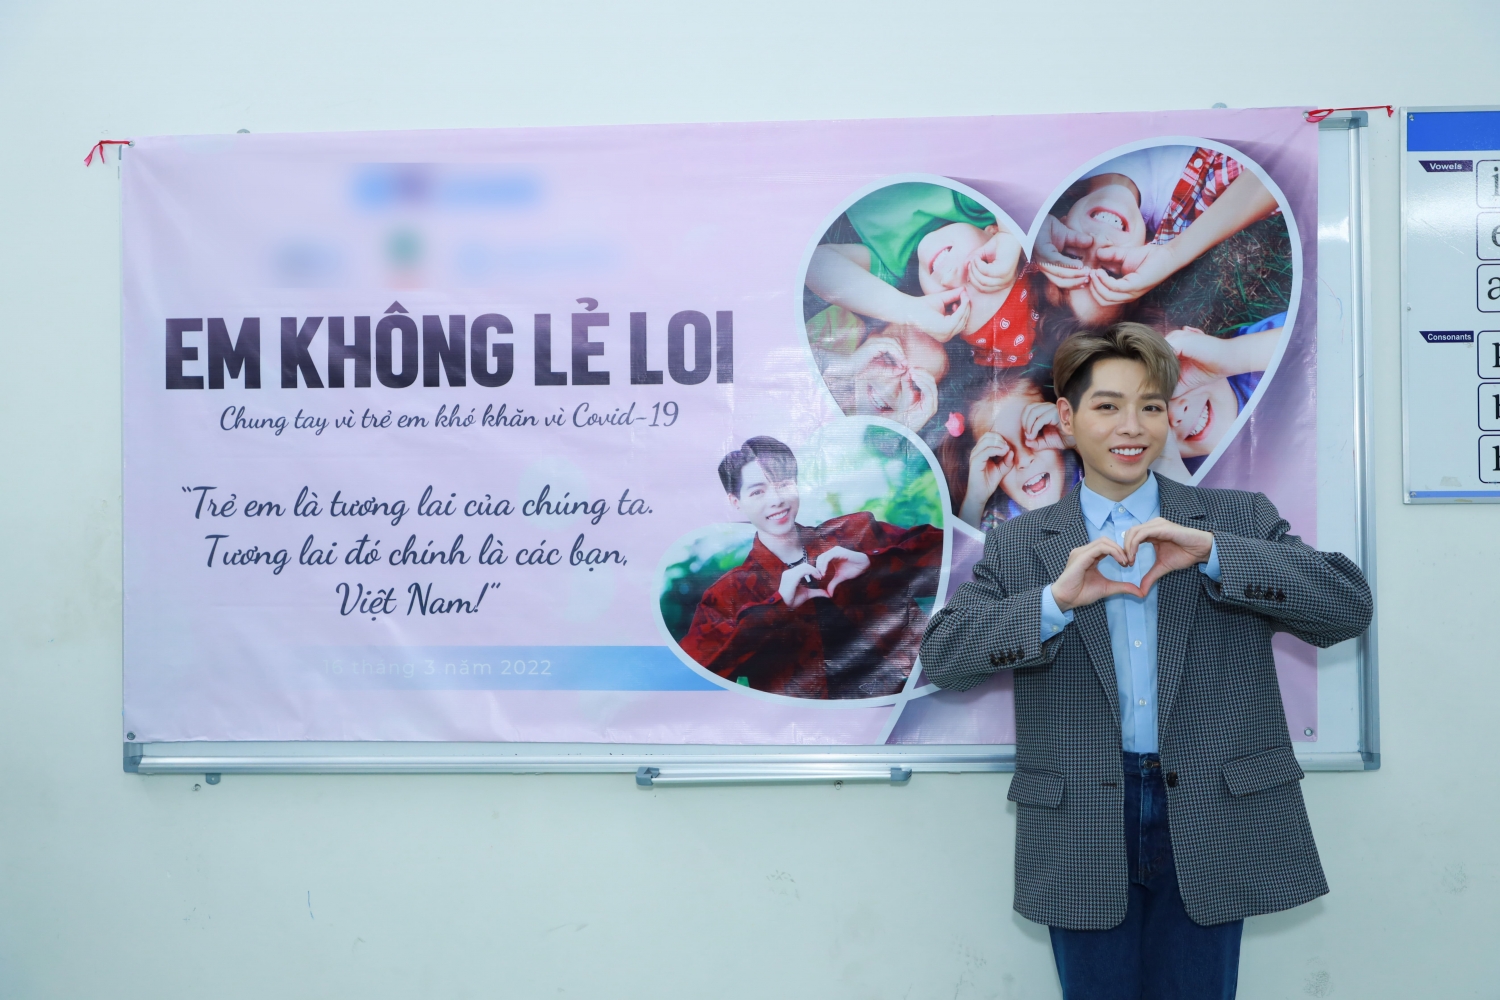 Sao Việt ngày 18/3/2022: Đức Phúc tham gia thiện nguyện giúp đỡ trẻ em mồ côi do Covid-19